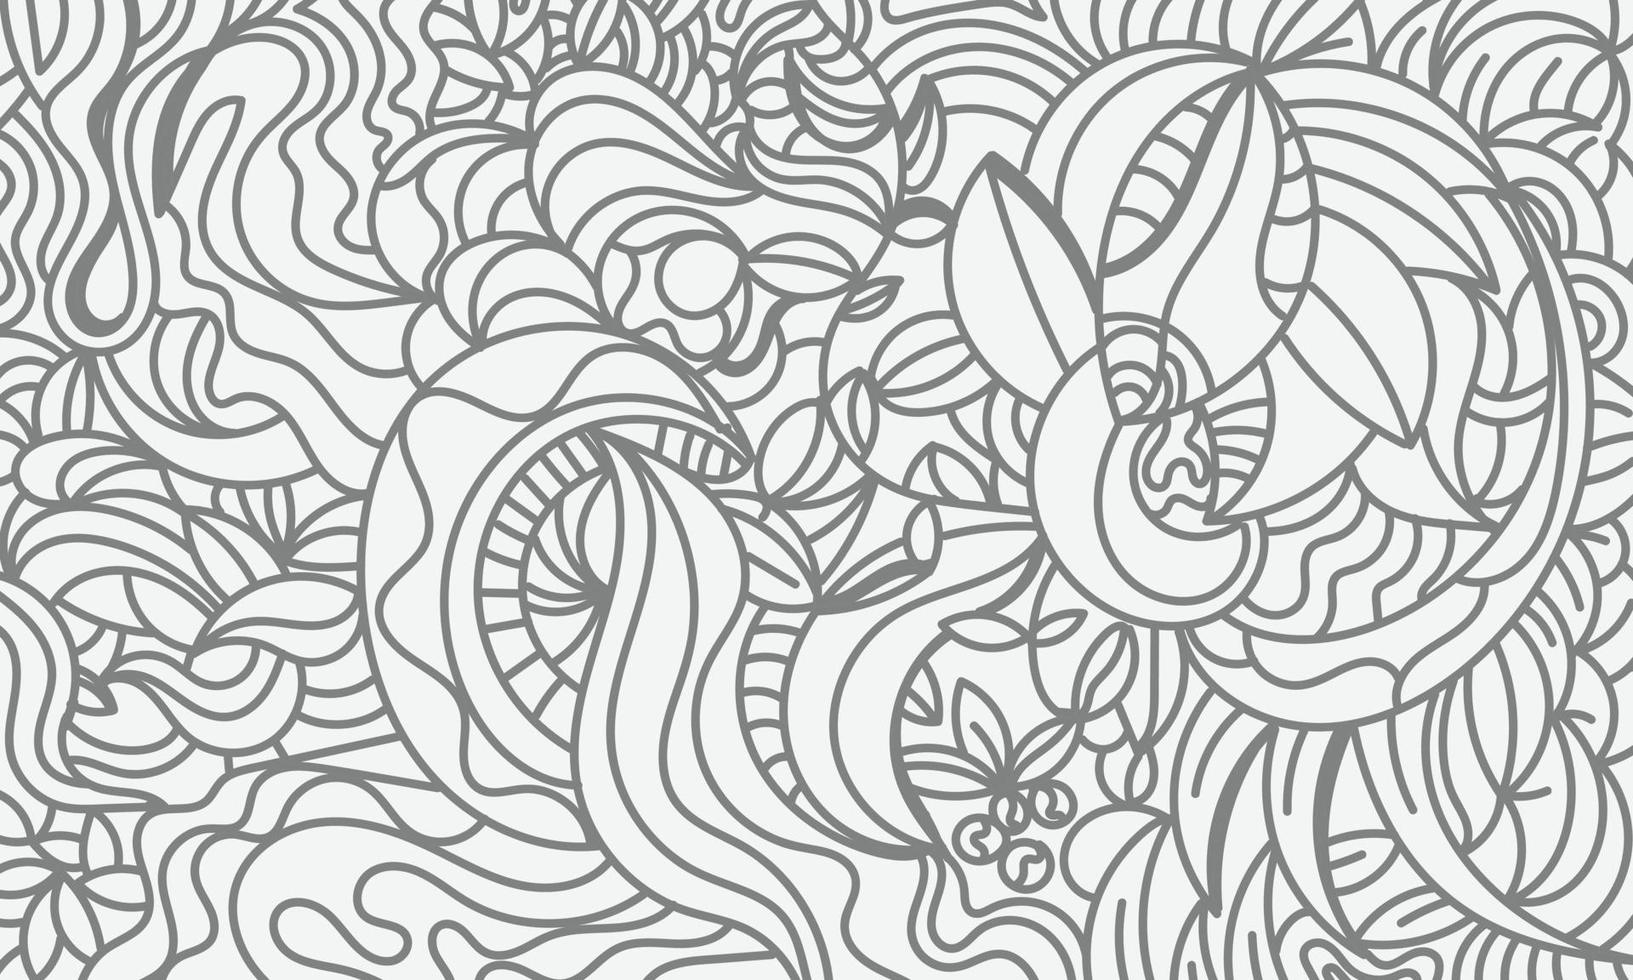 noir blanc abstrait dessin à la main fond floral illustration vectorielle vecteur